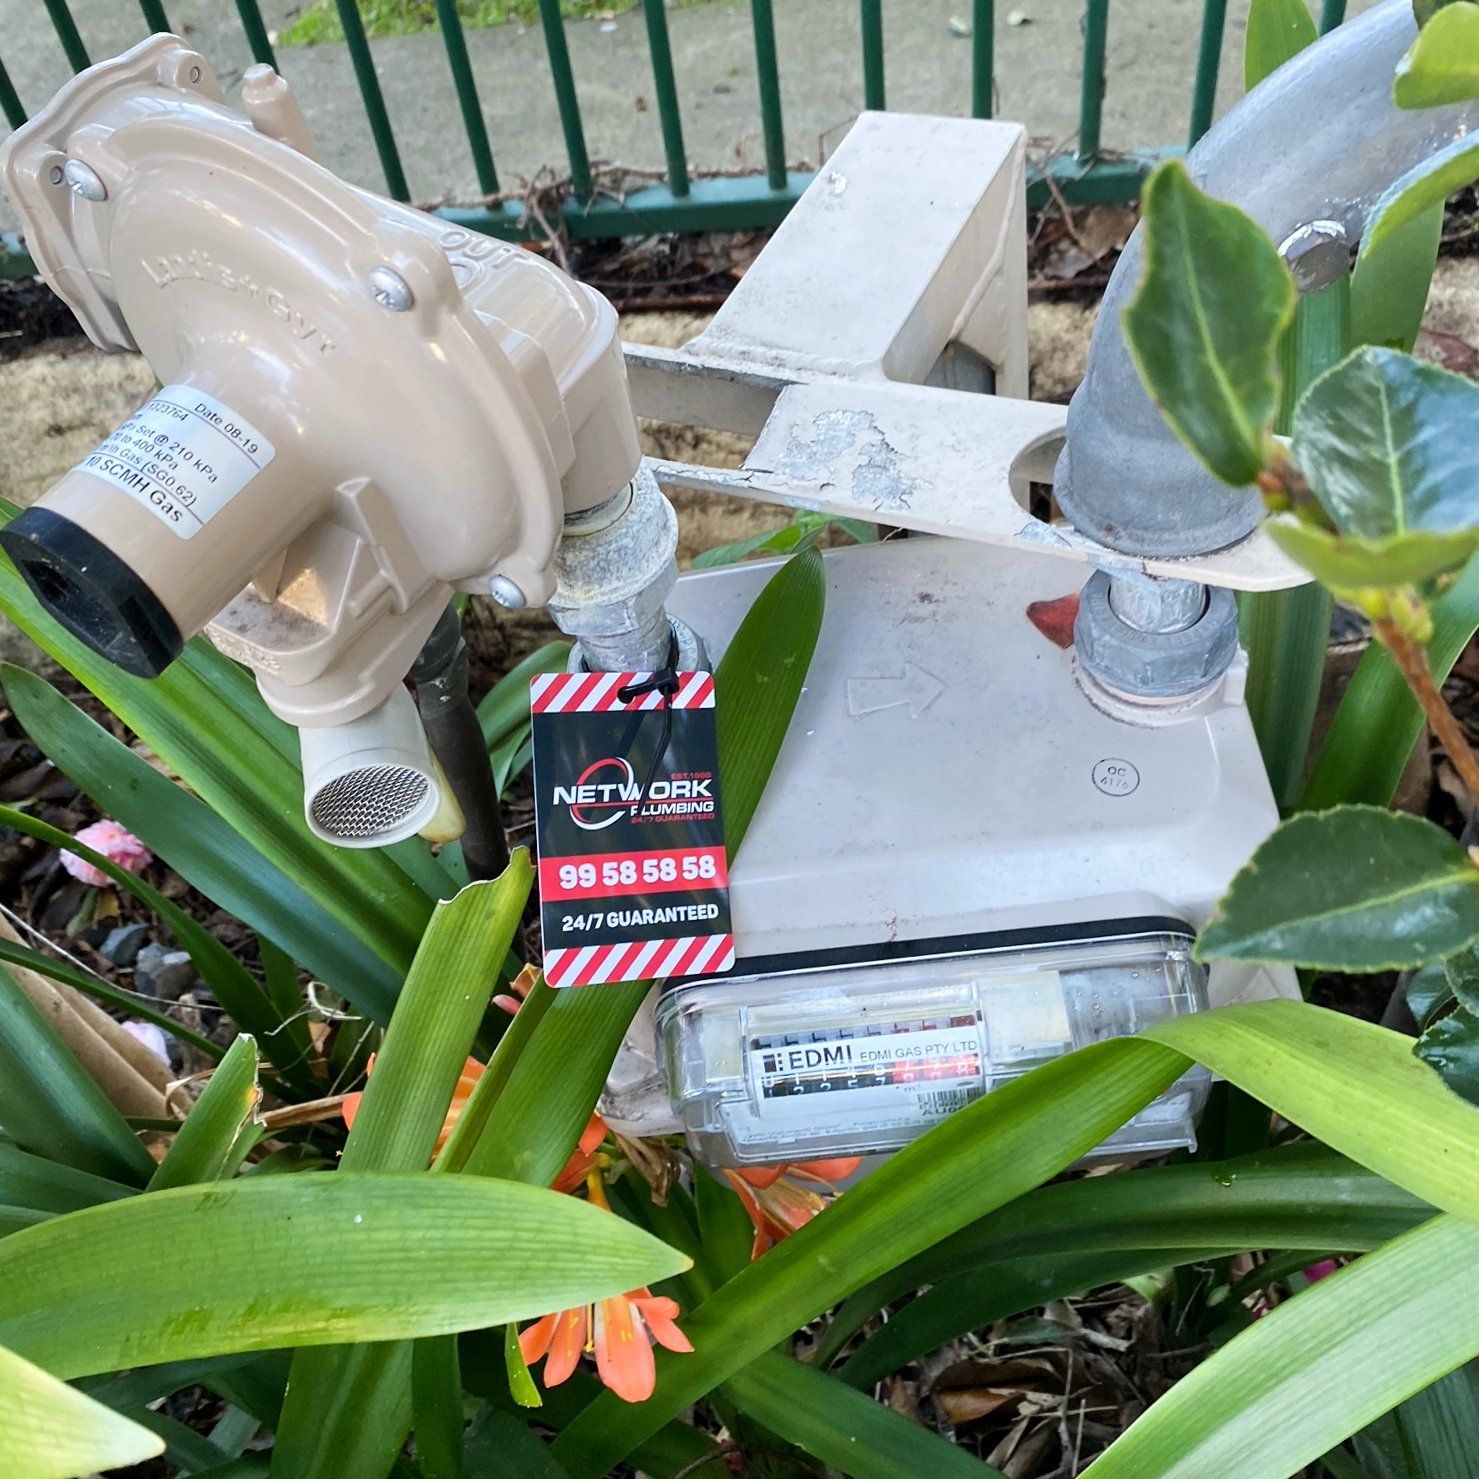 Network Plumbing gas meter reading emergency tag